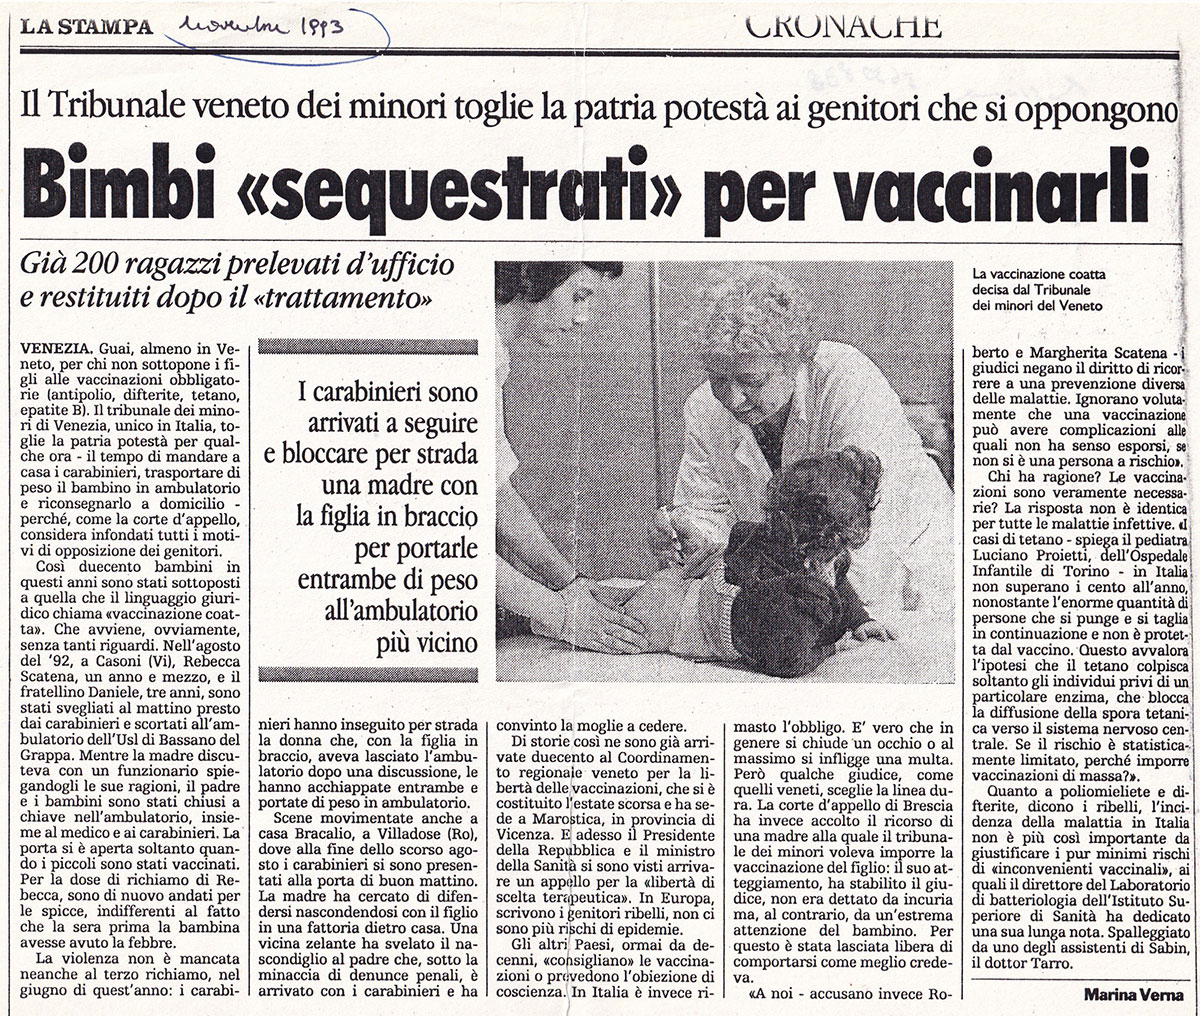 Des enfants « saisis » pour se faire vacciner. La Stampa, novembre 1993